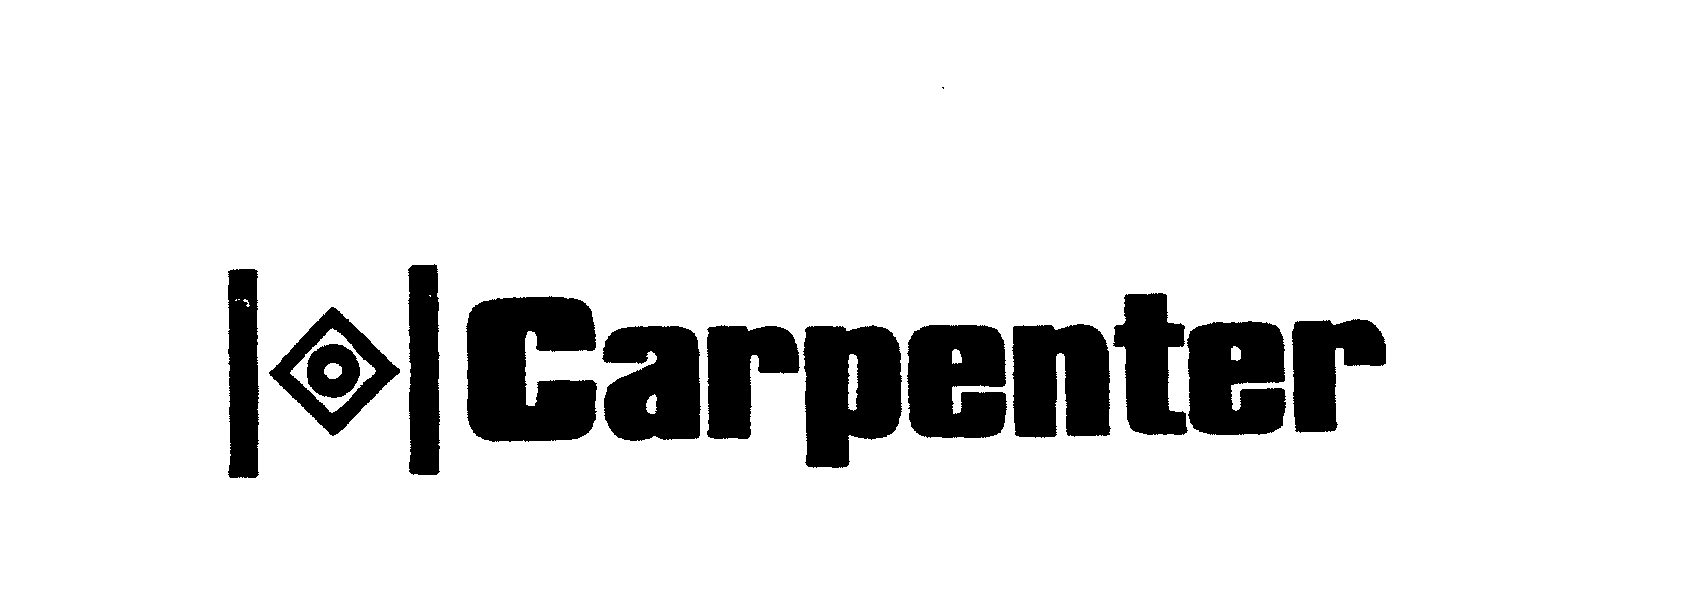 CARPENTER